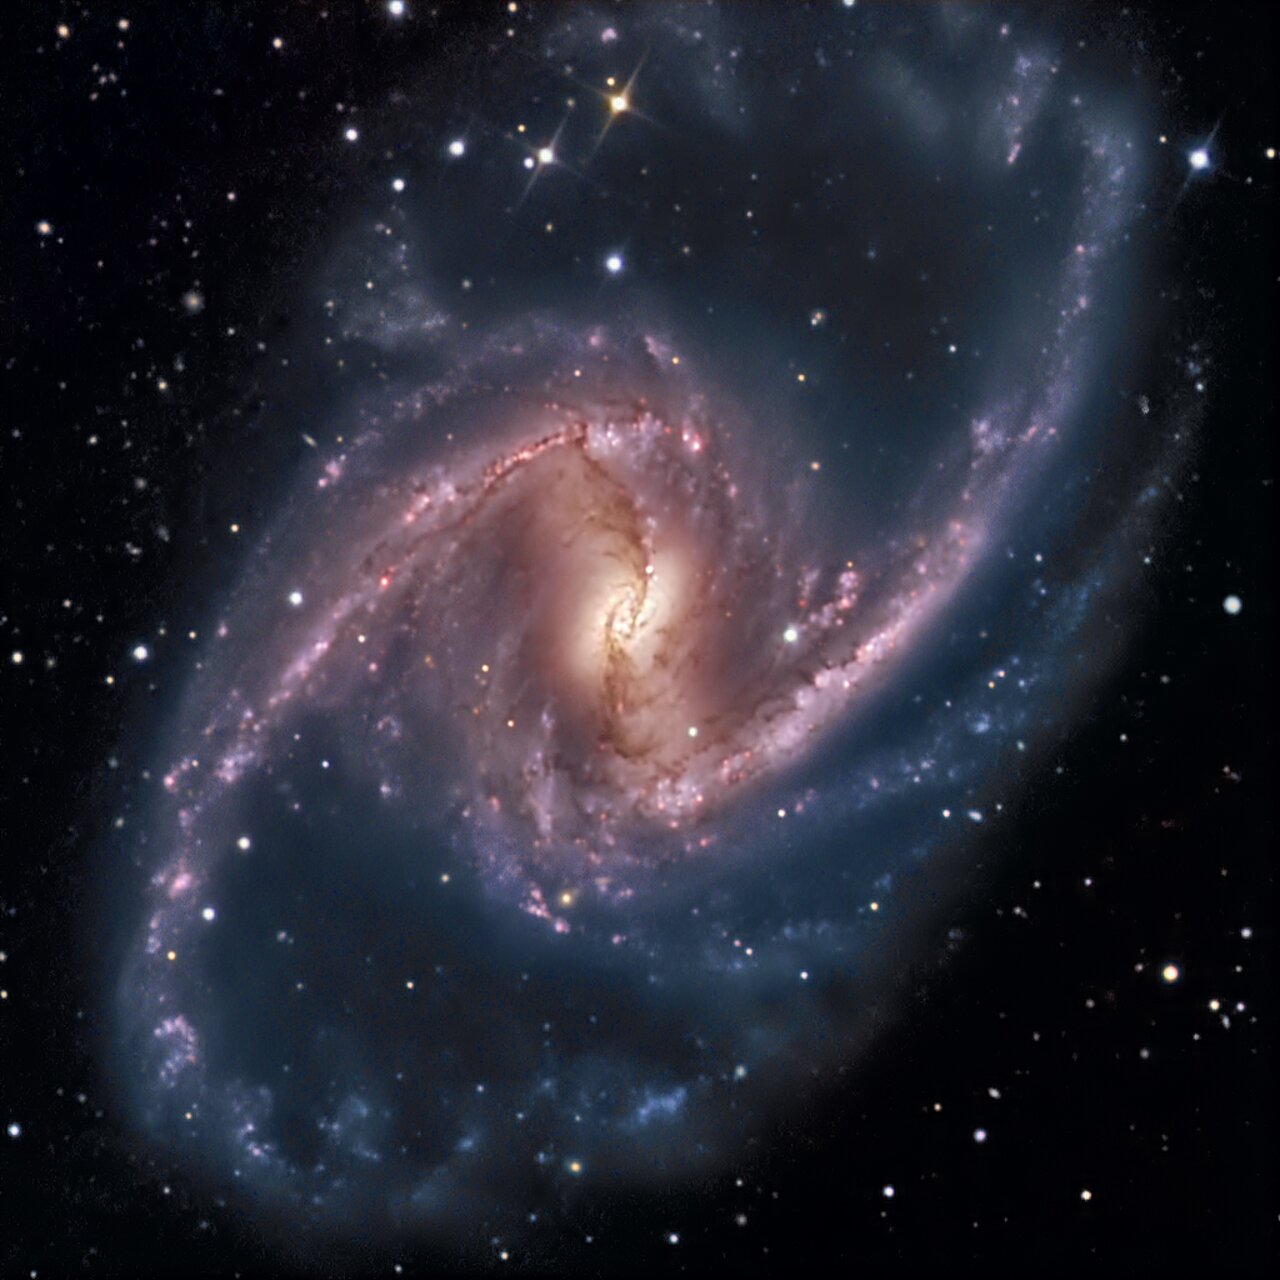 Galáxia espiral barrada